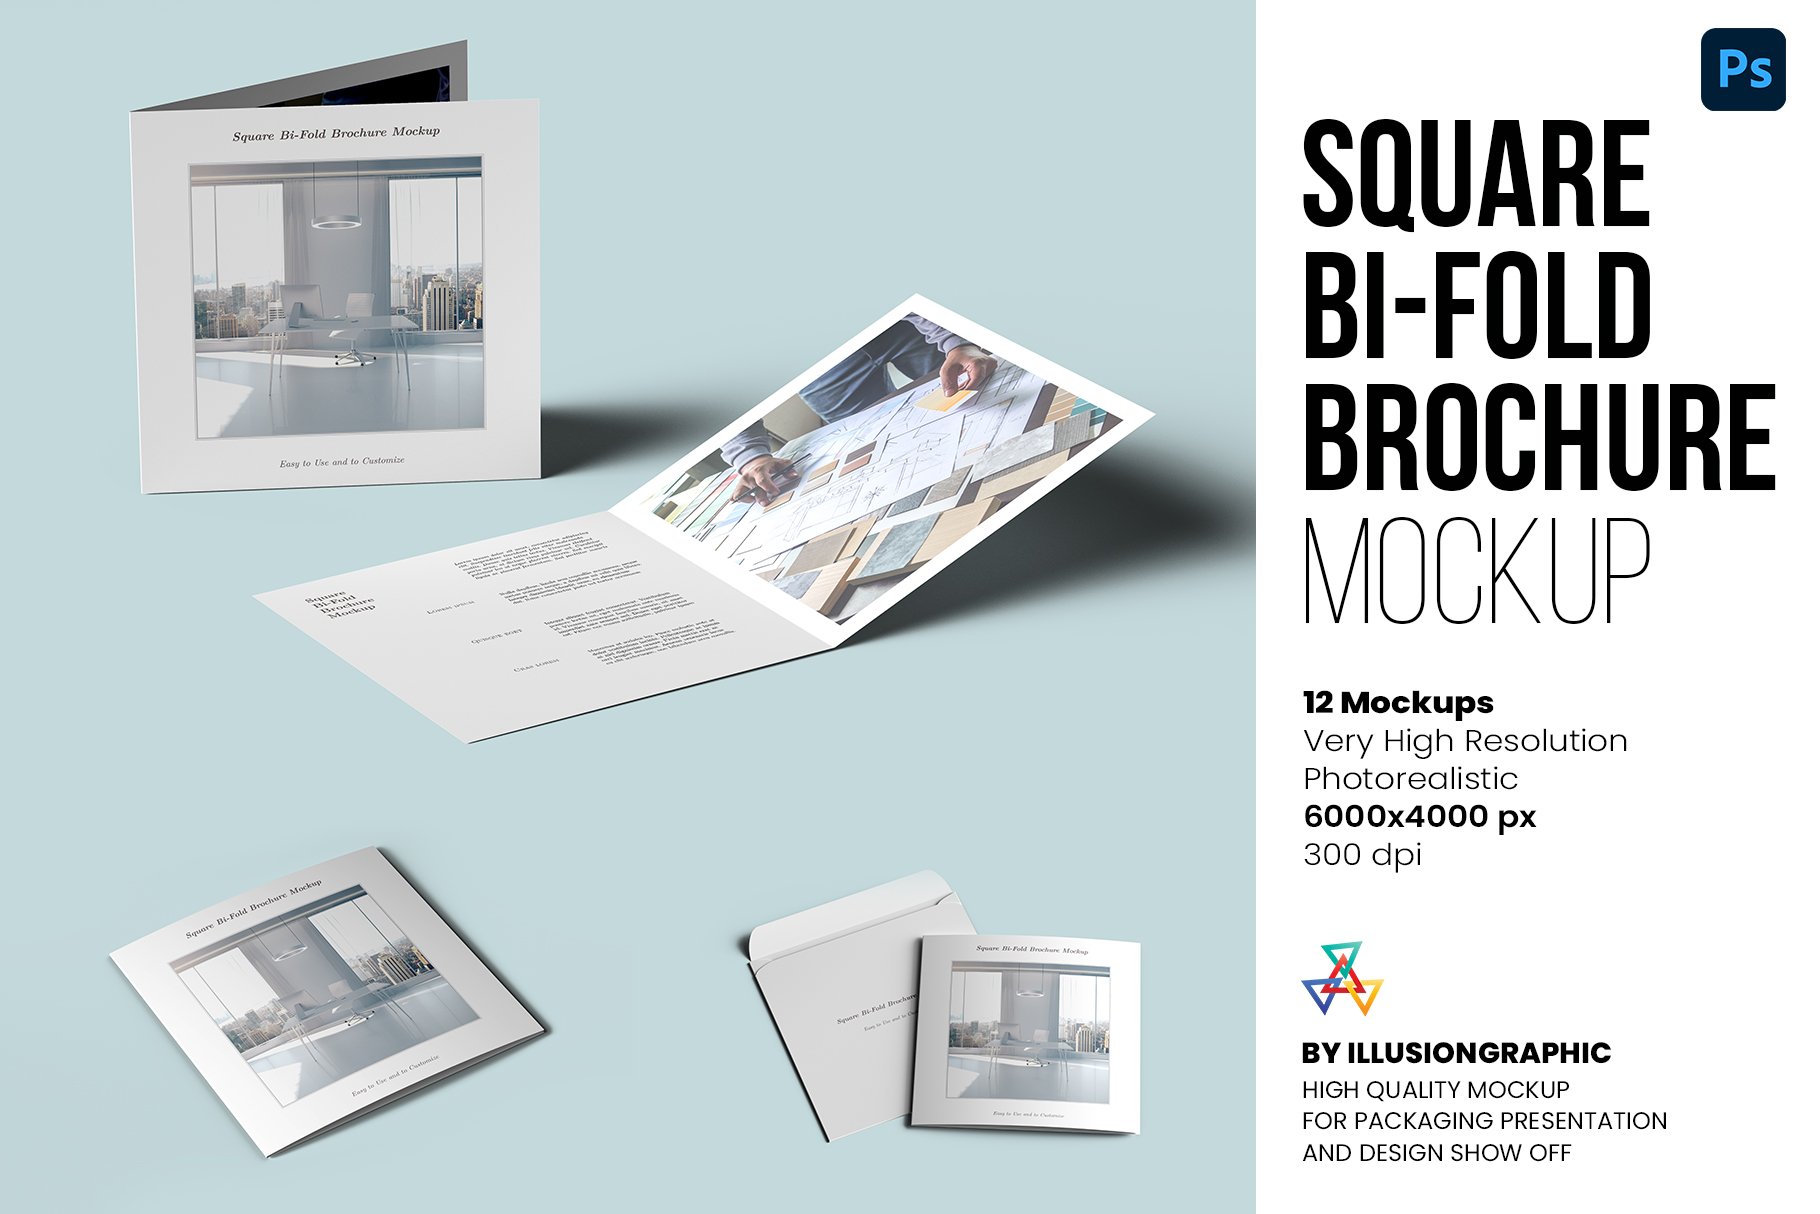 Square Bi-Fold Brochure Mockups cover image.